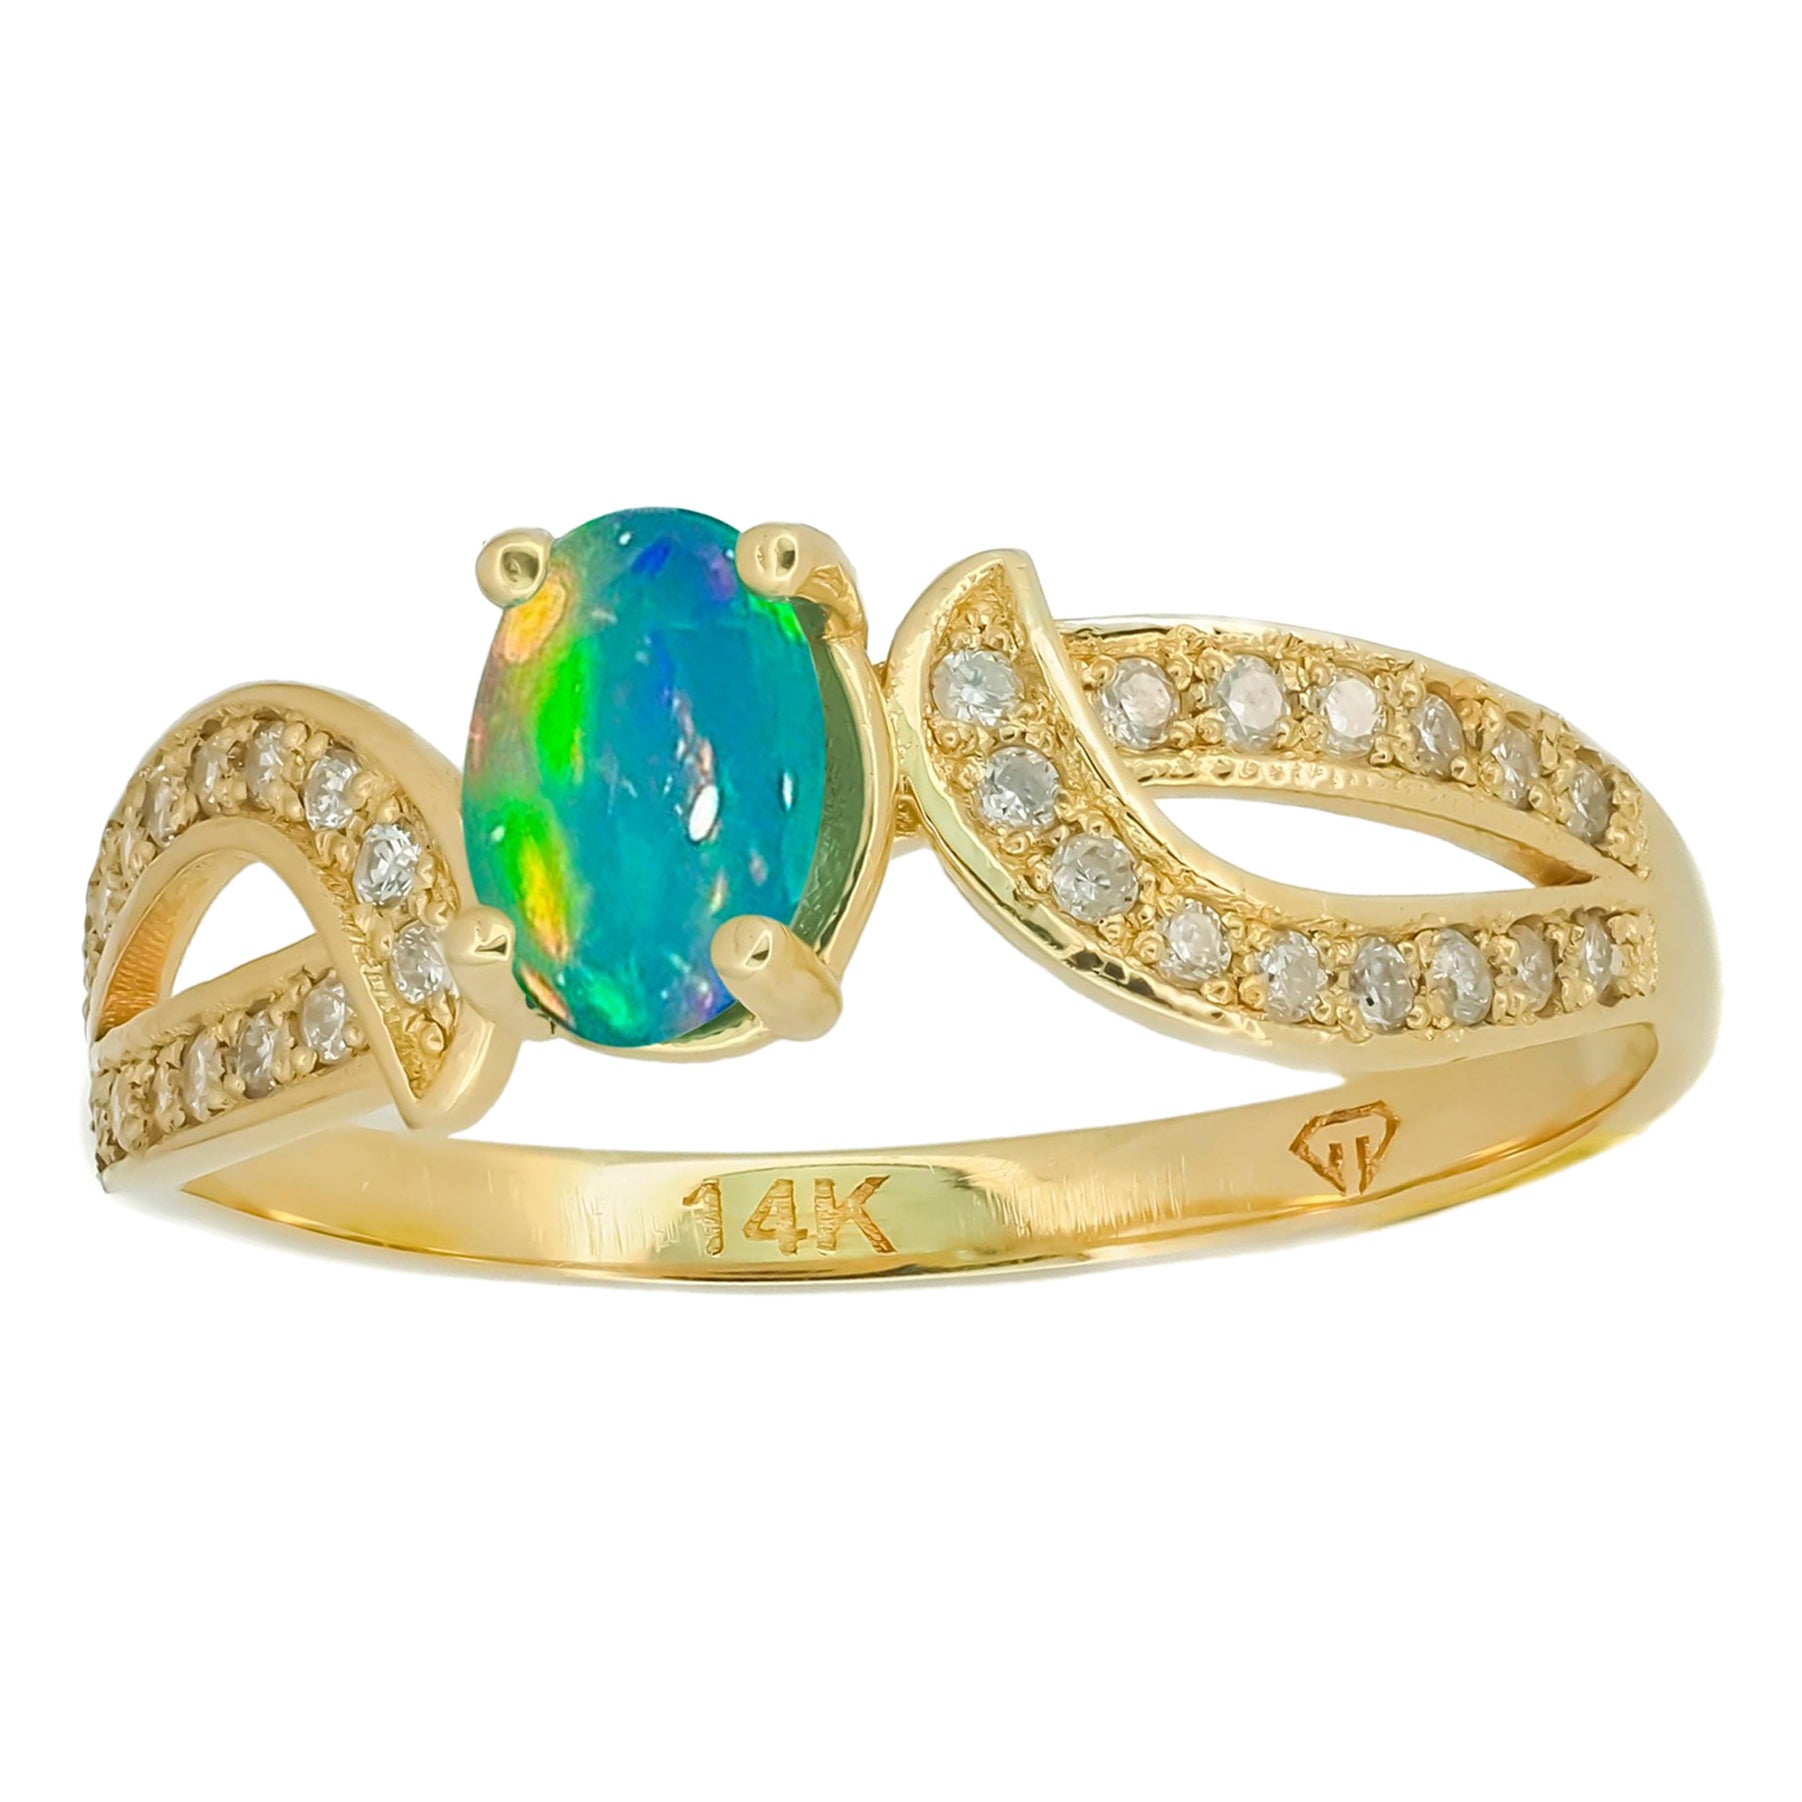 Echter Opal 14k Gold Ring. 